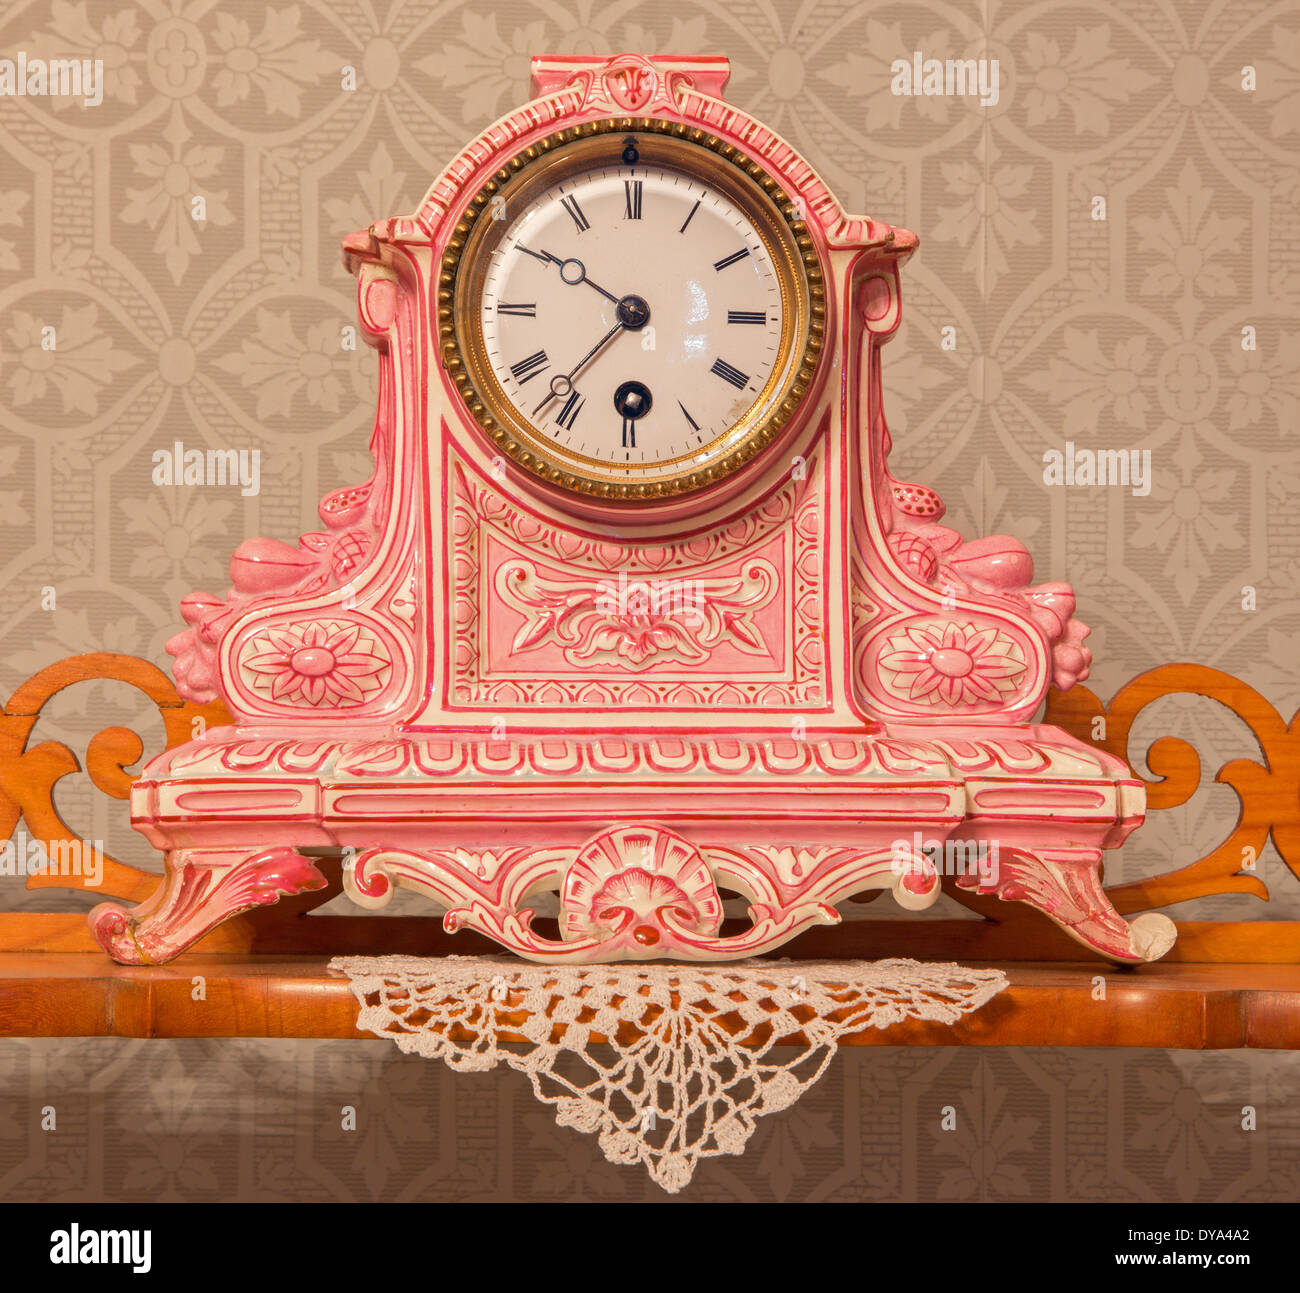 SAINT ANTON, Slovaquie - 27 février 2014 : horloge de table en céramique 19. cent. Dans palace Saint Anton. Banque D'Images